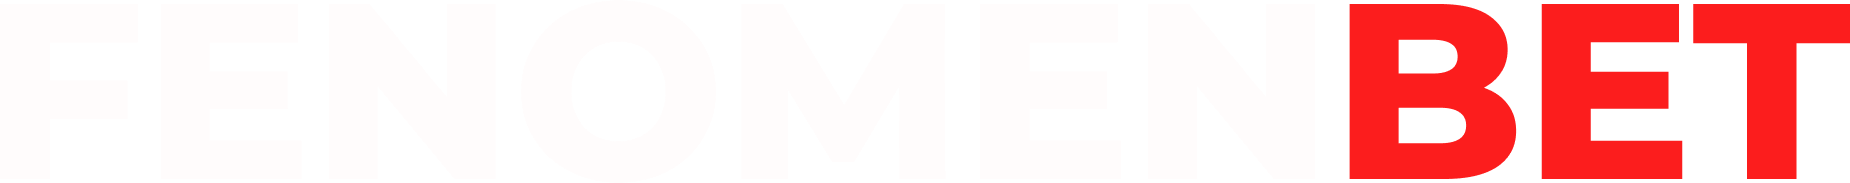 FenomenBet Logo